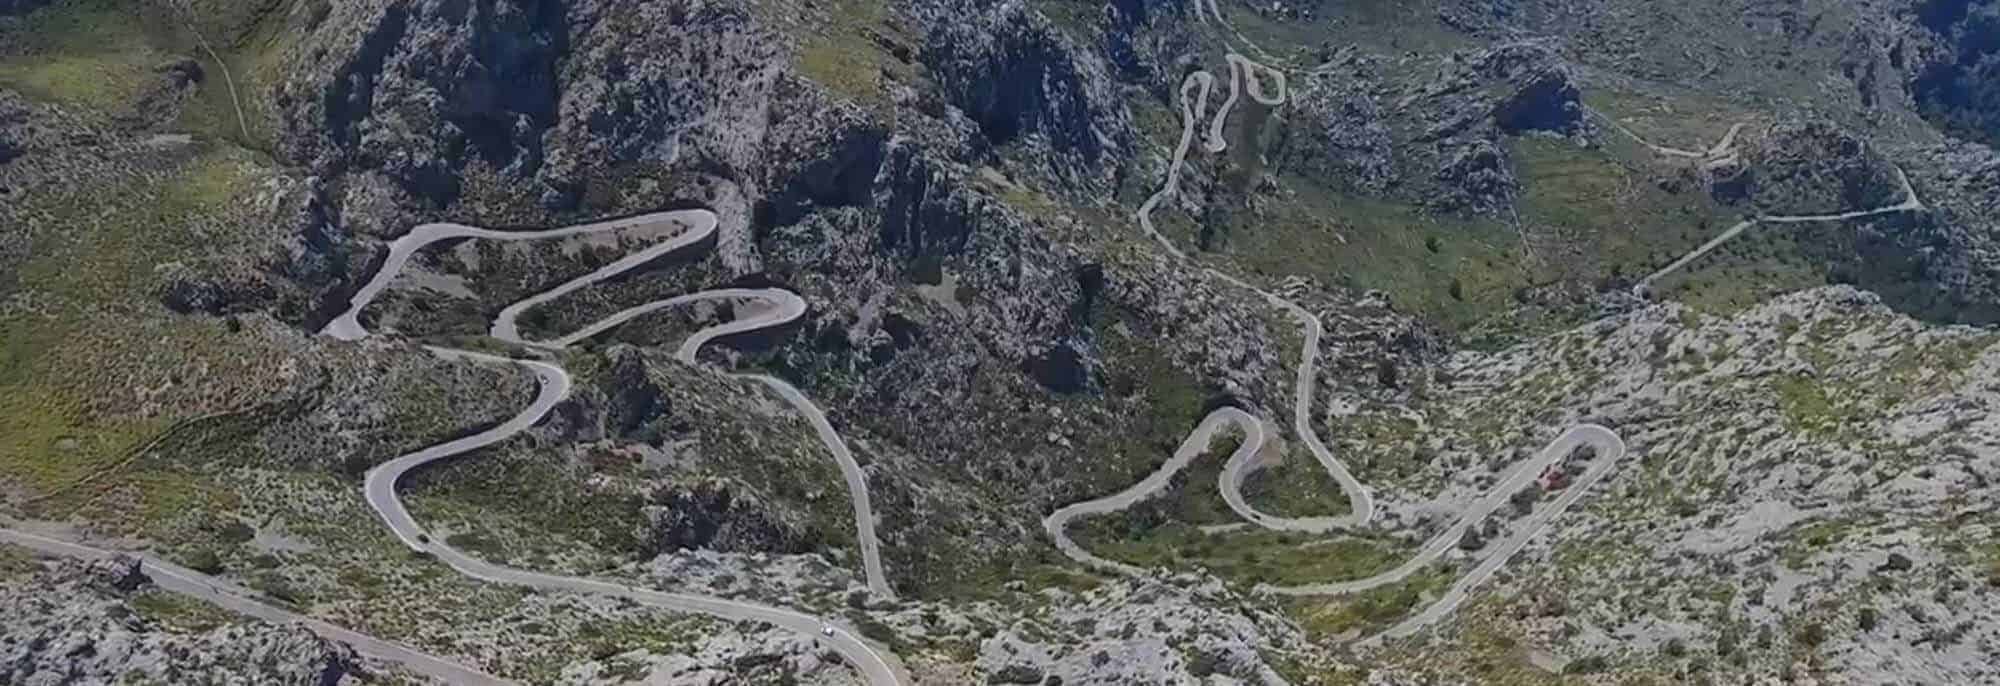 Sa Calobra the brilliant jewel in Mallorca's cycling crown